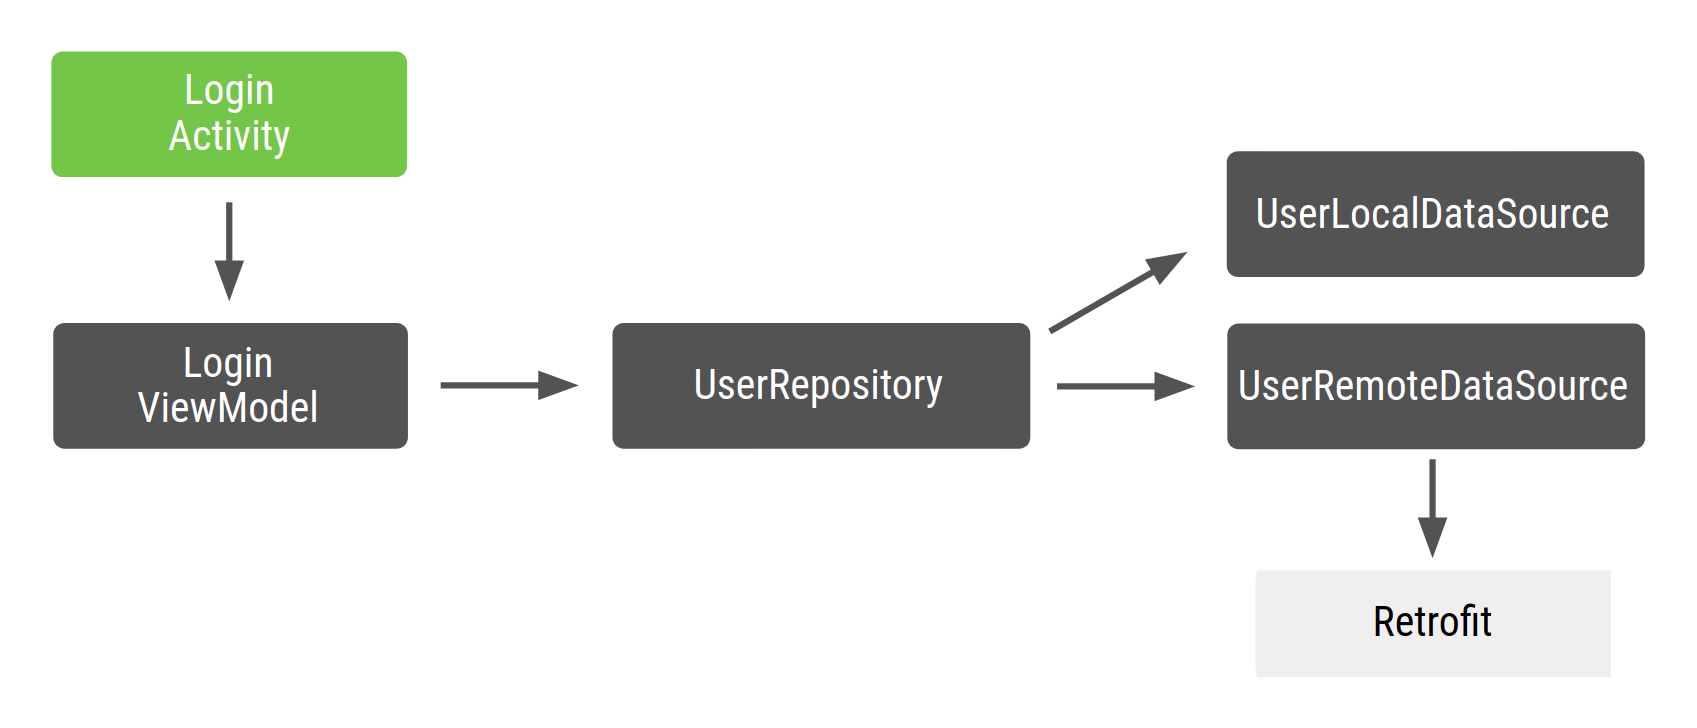 LoginActivity depende de LoginViewModel, que, a su vez, depende de UserRepository, y este depende de UserLocalDataSource y UserRemoteDataSource, los cuales dependen de Retrofit.